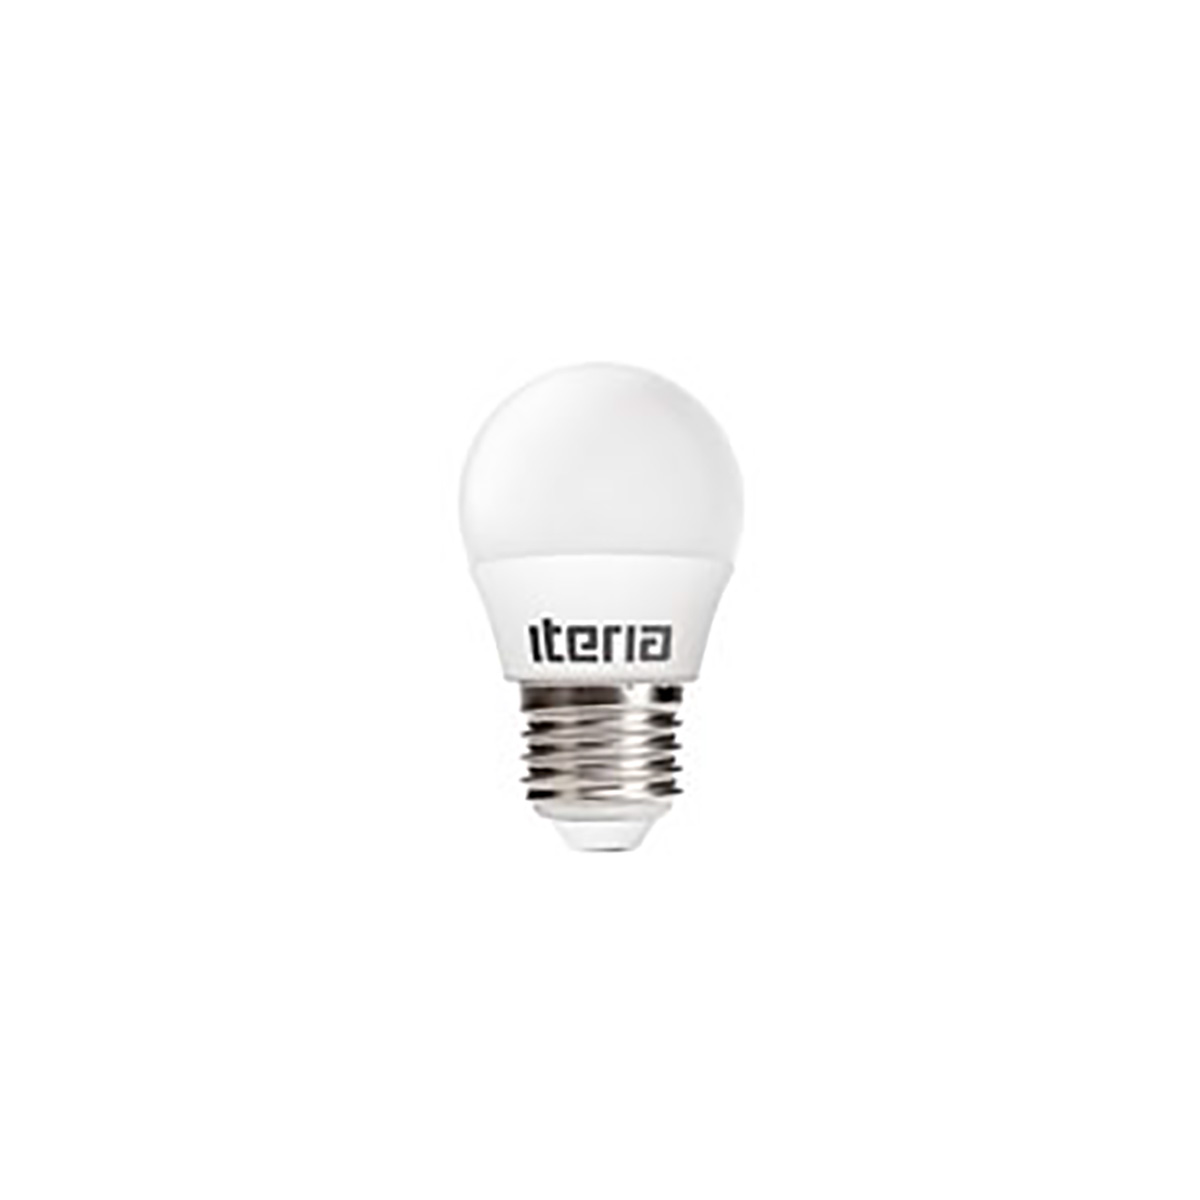 Лампа Iteria Шар 6W 4100K E27 матовая. Бренд: Iteria. Лампы